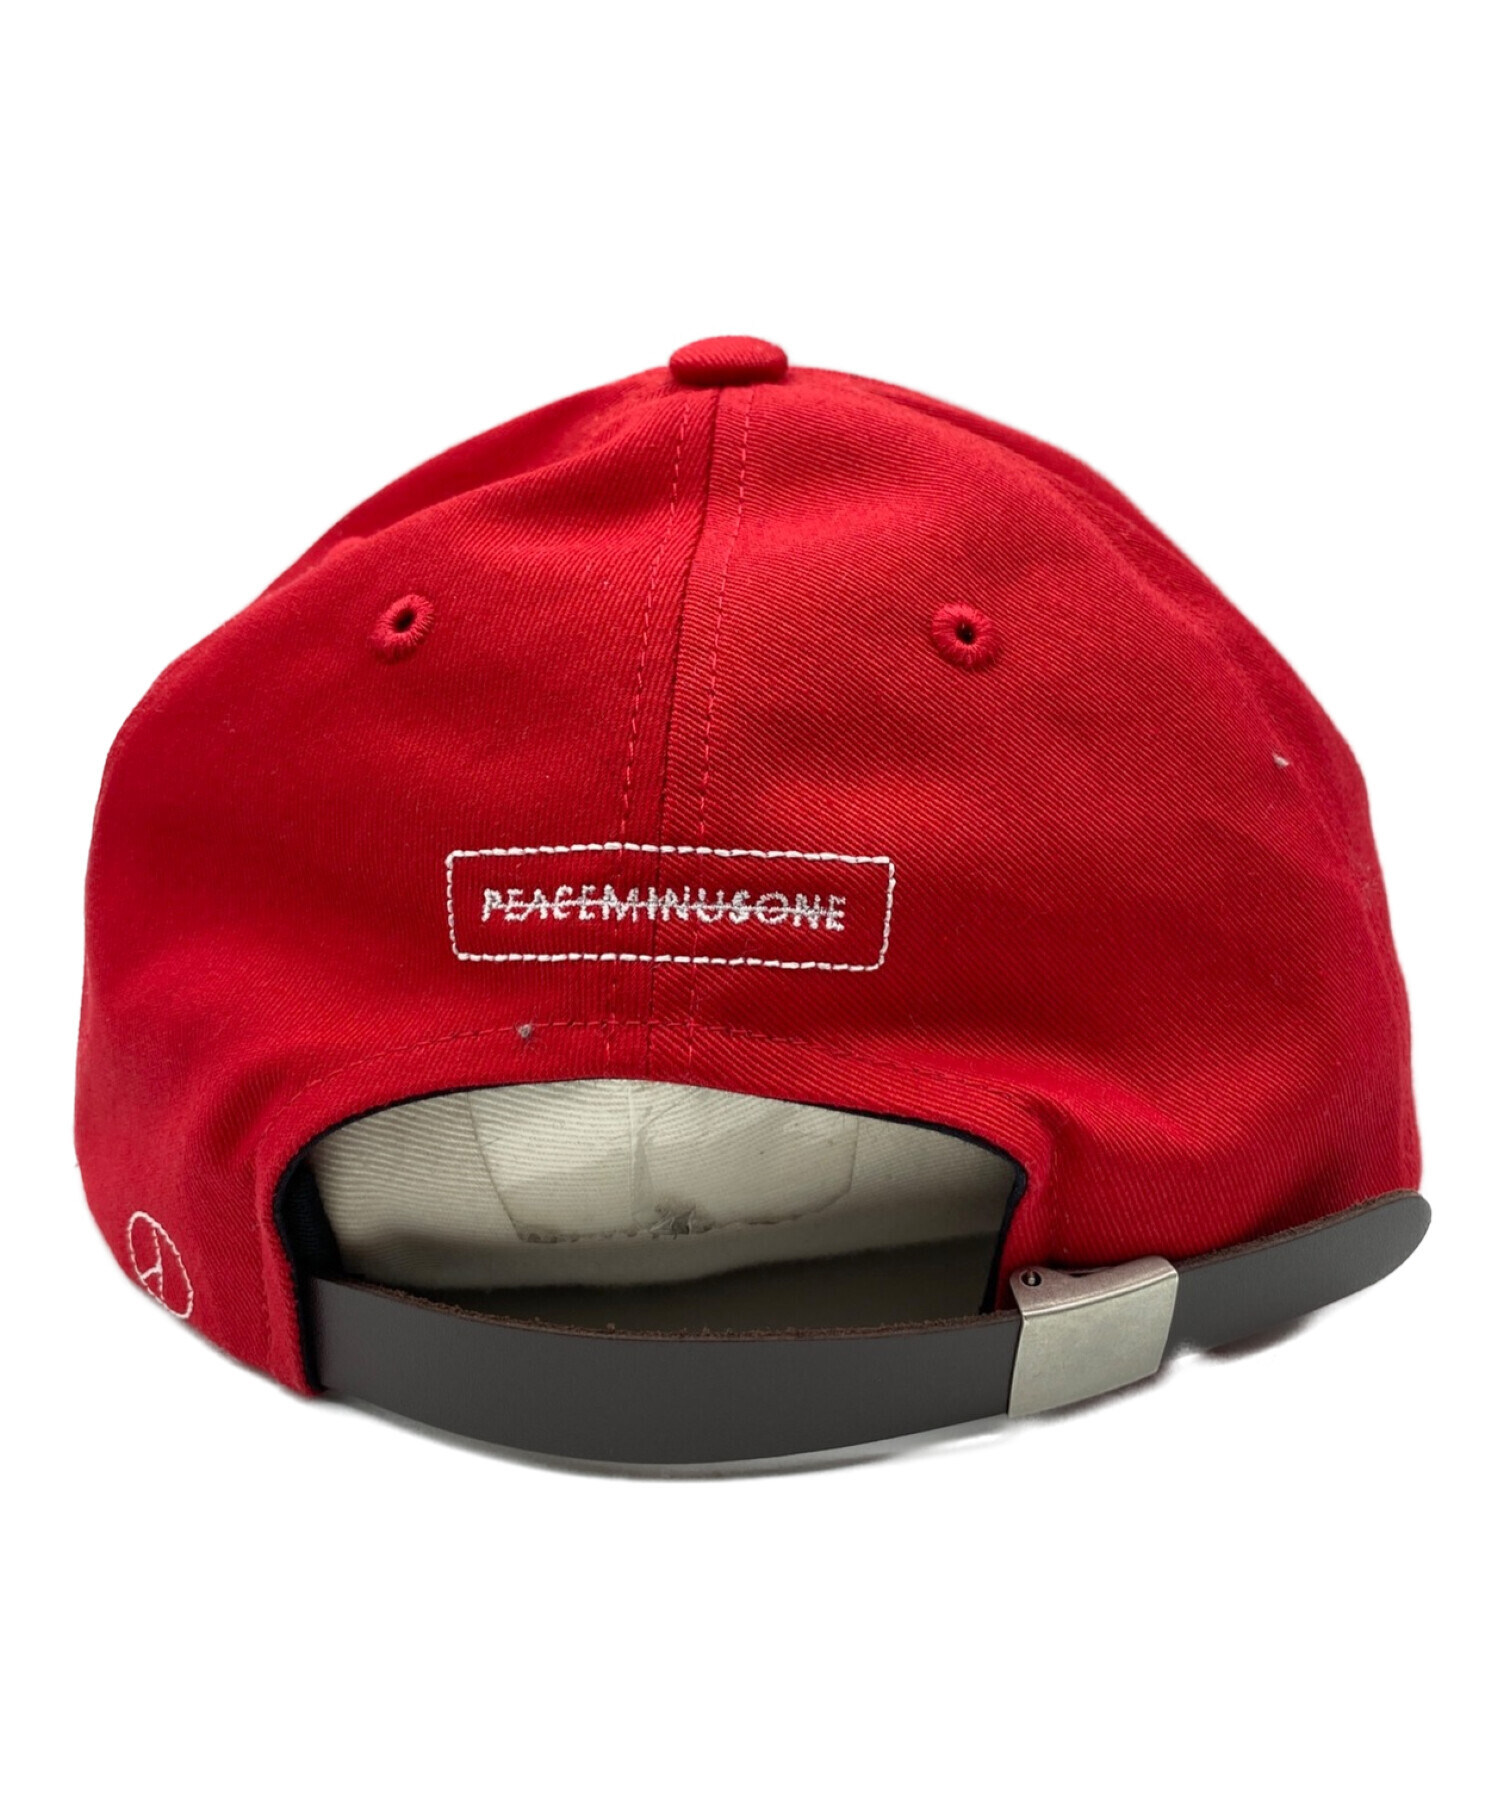 PEACEMINUSONE PMO COTTON CAP #4 RED